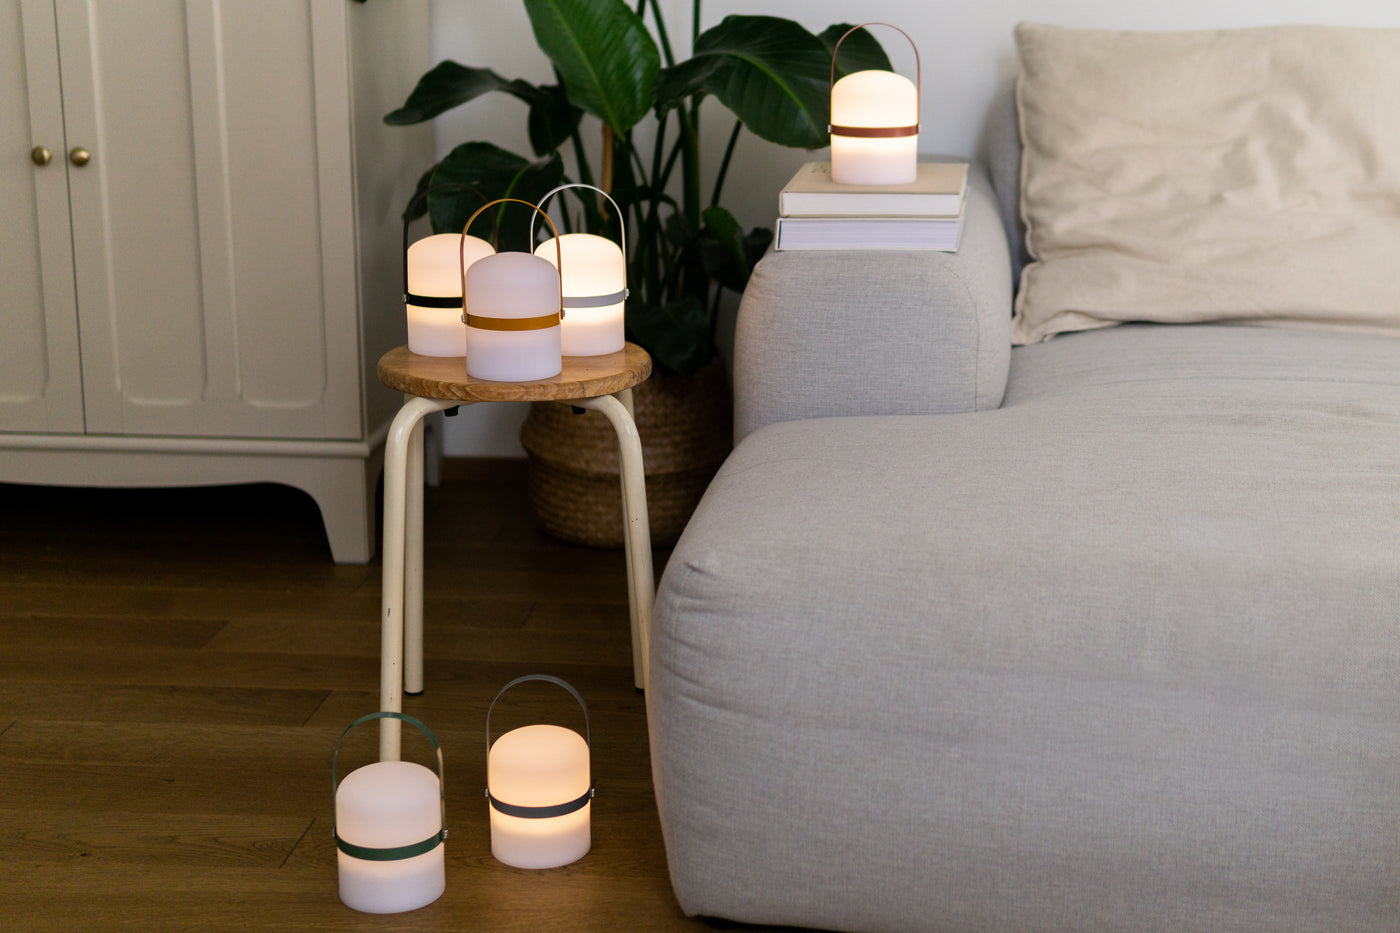 Sechs aufgestellte LED Lampen verteilt auf dem Boden, Holz Hocker und Couch im Wohnzimmer in verschiedenen Farb Variationen